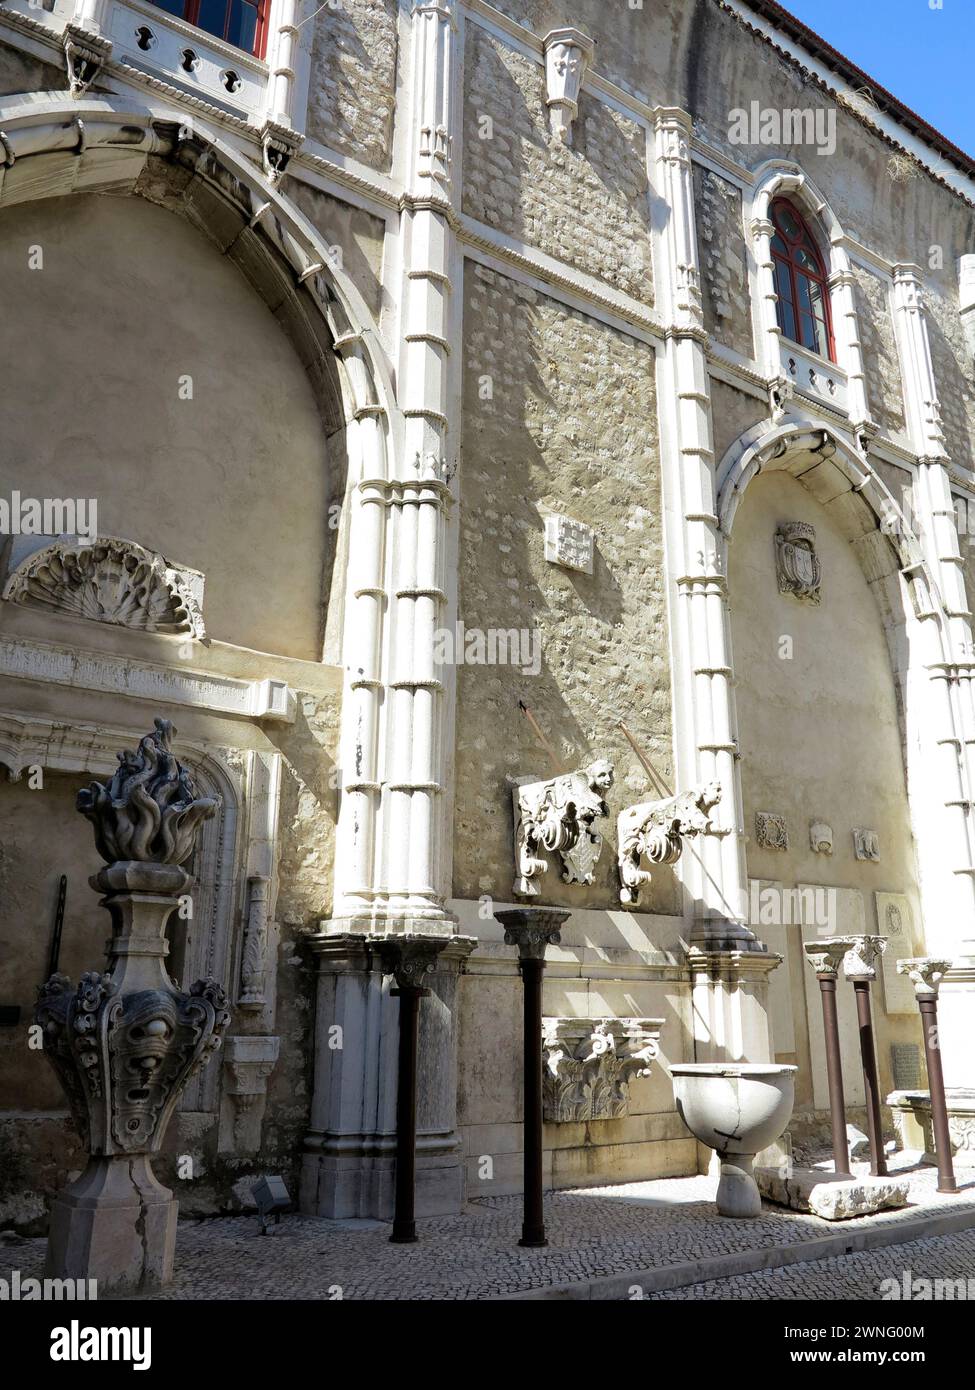 Ruines de l'église gothique du couvent Carmo du XIVe-XVe siècle à Lisbonne, Portugal. Endommagé par le tremblement de terre de 1755. Banque D'Images